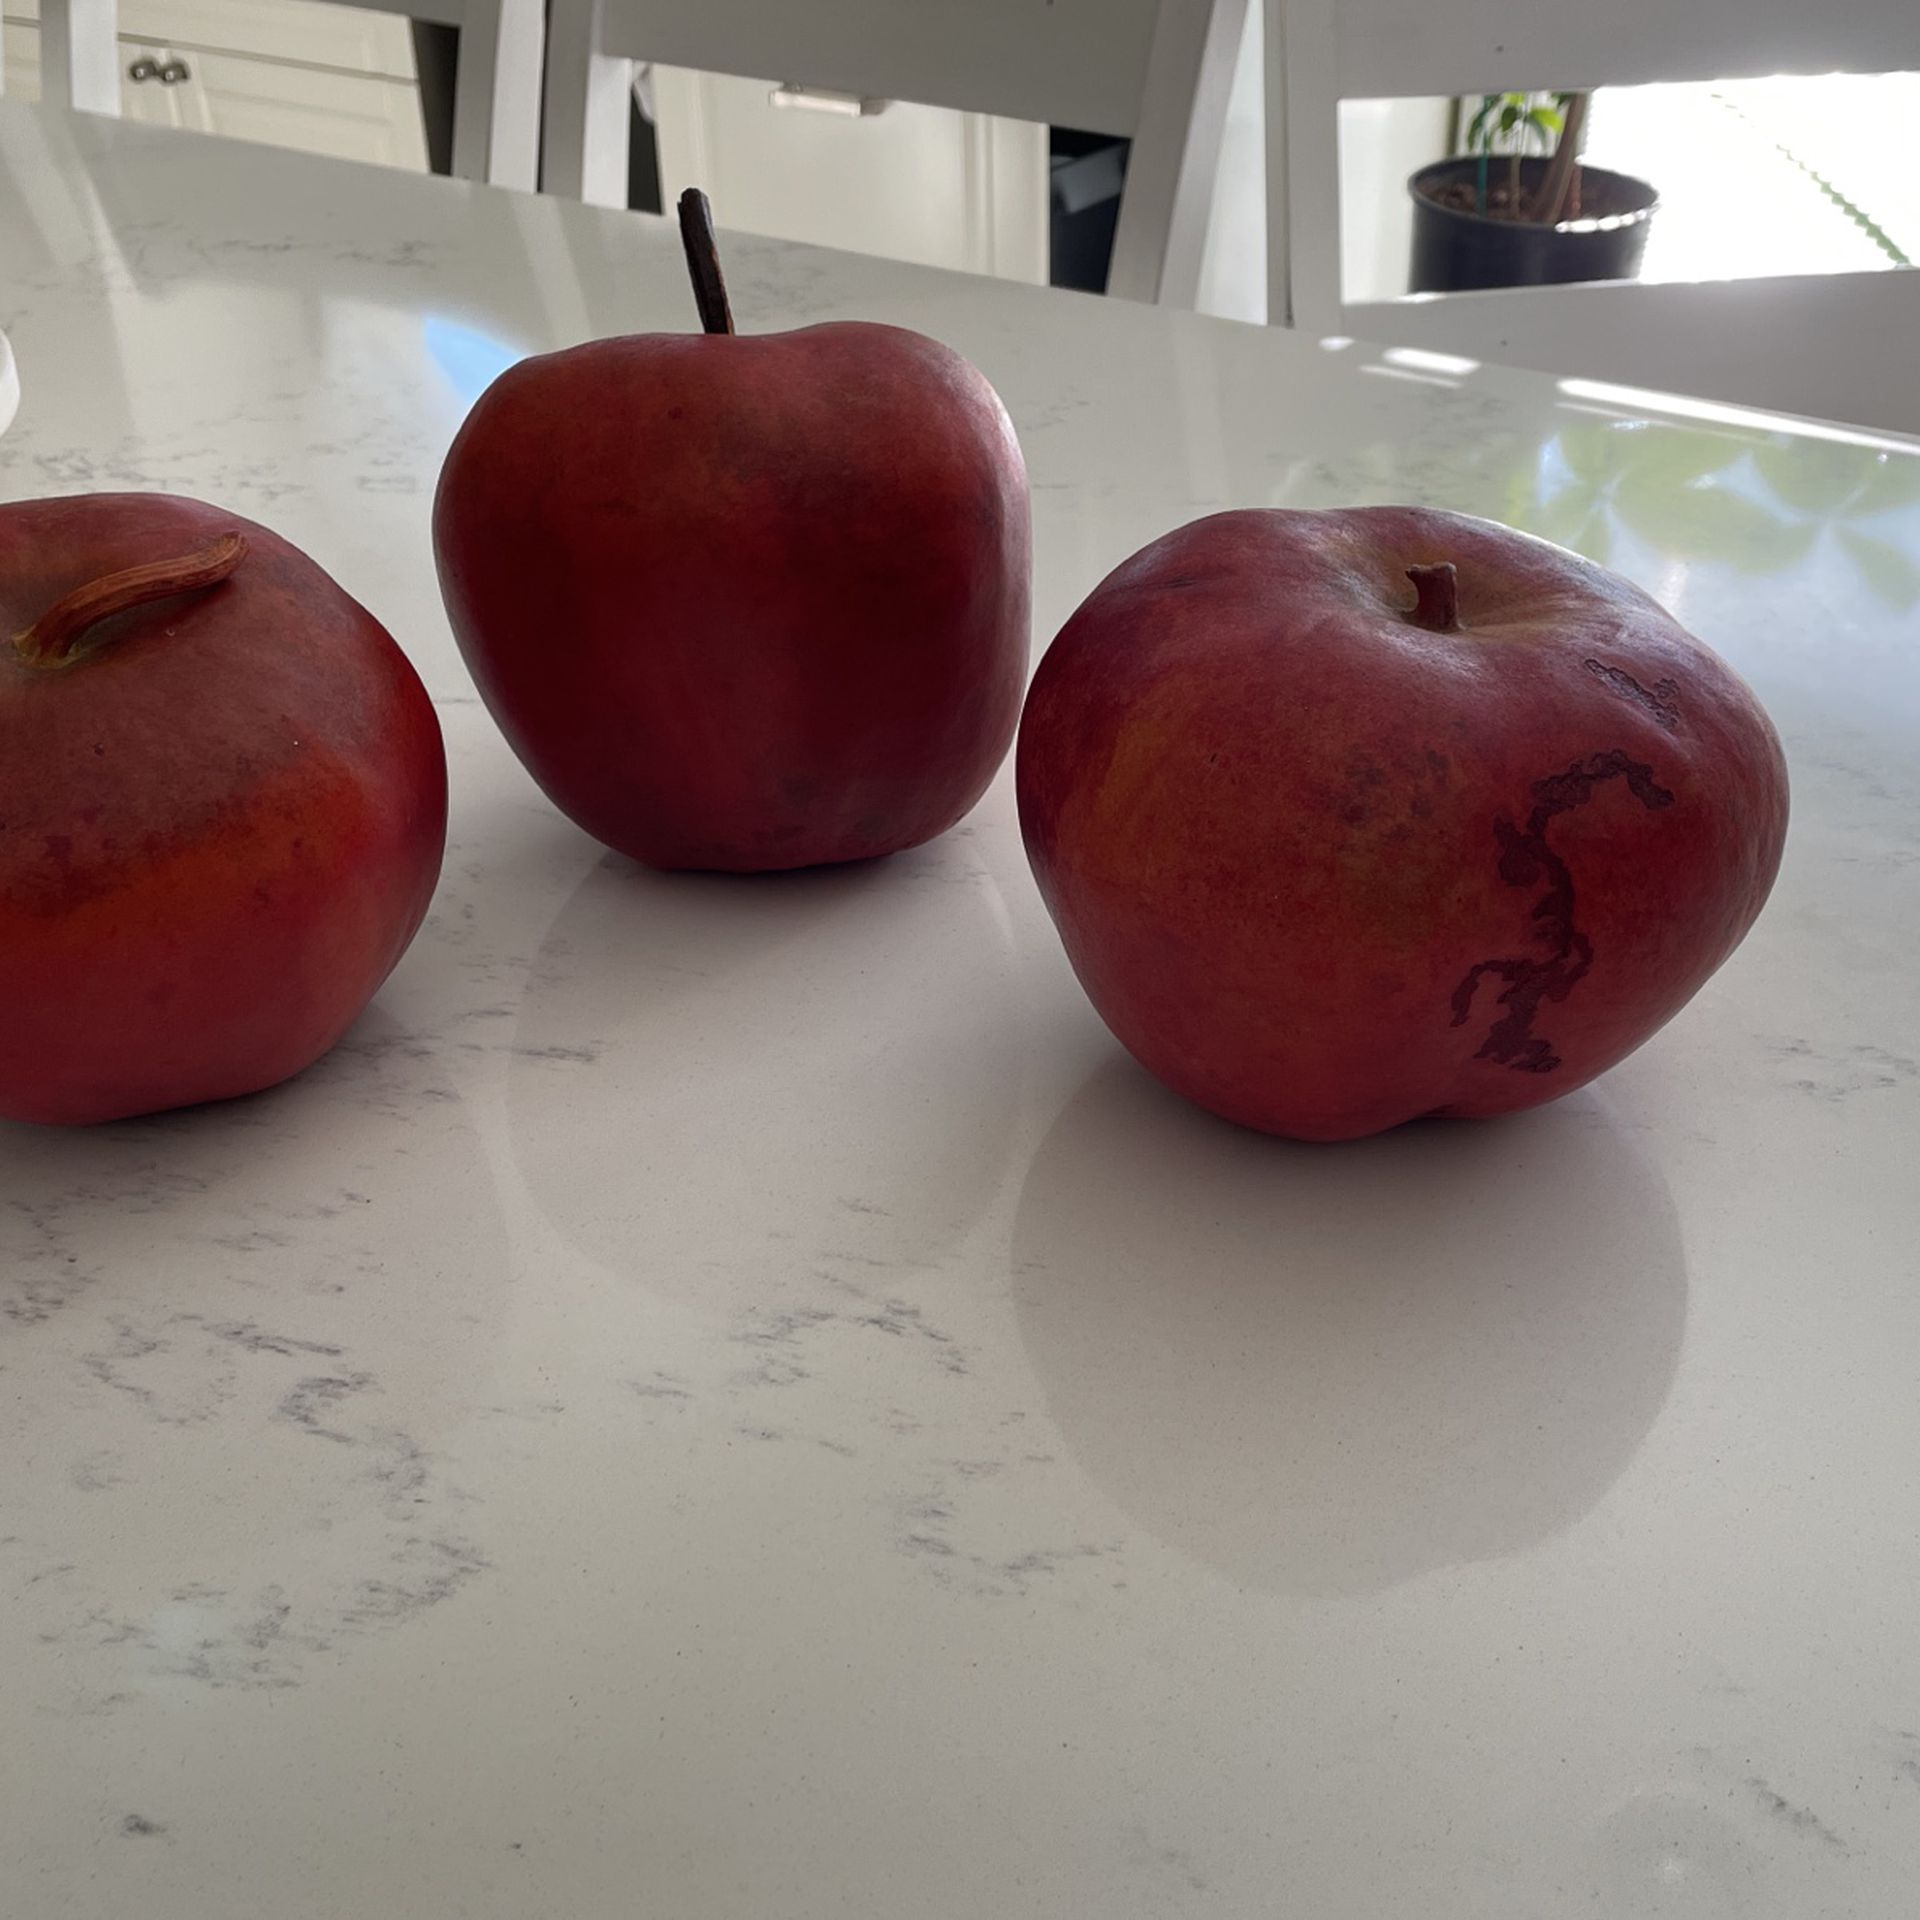 Apples Decorativas